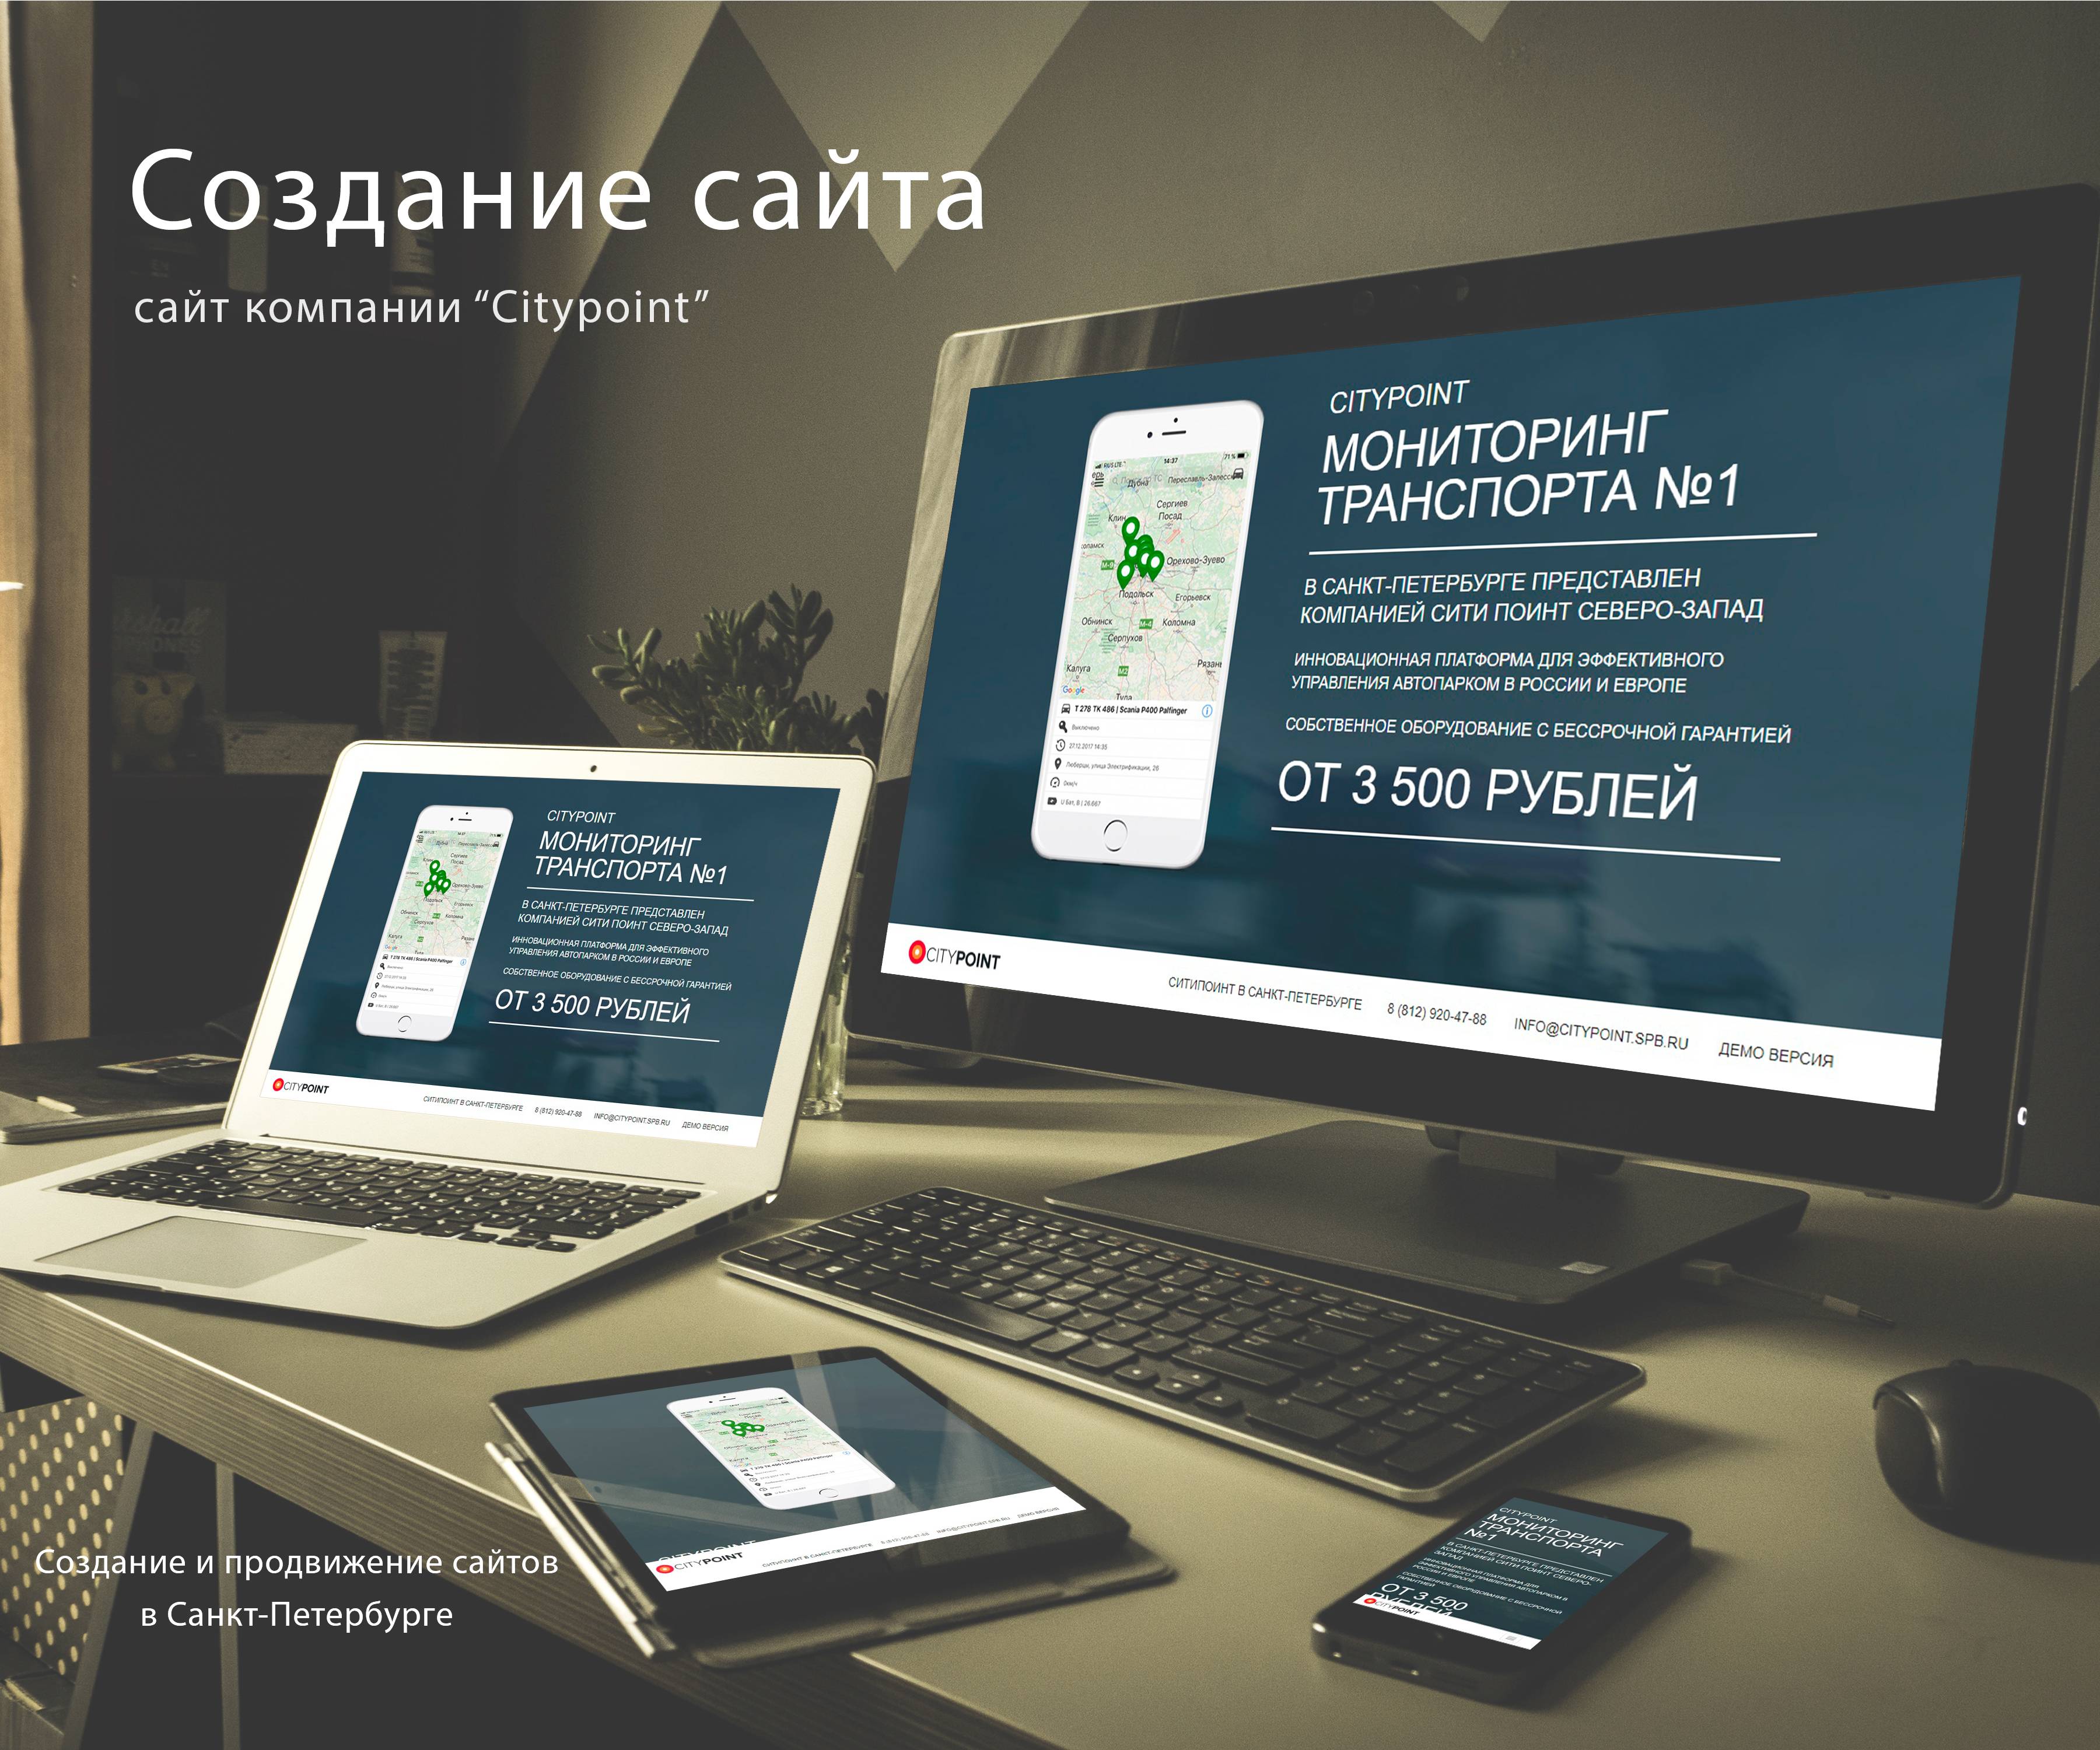 Создание сайтов в москве цена заявку